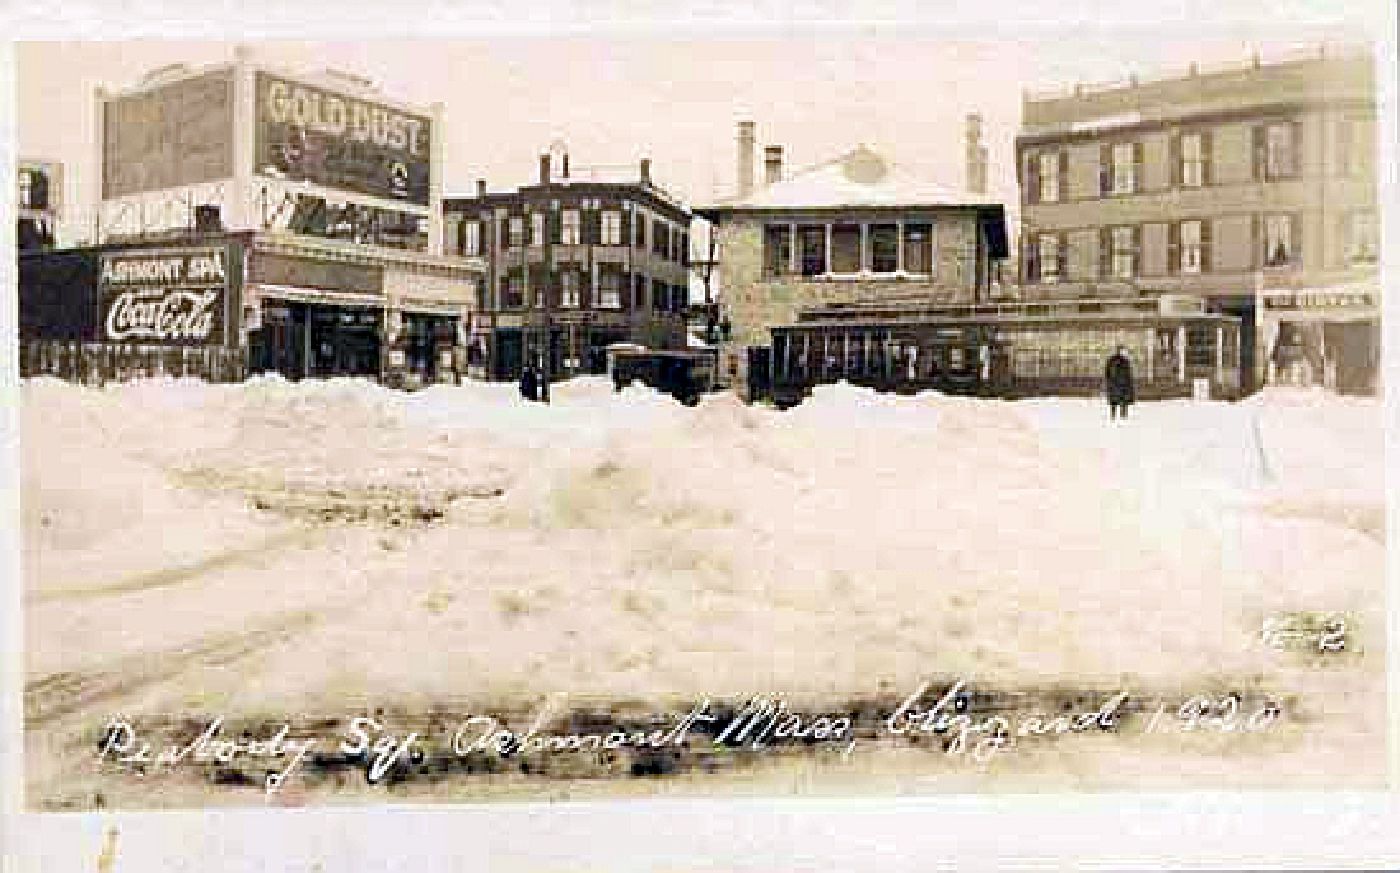  Peabody Sq. Ashmont, Mass., blizzard of 1920